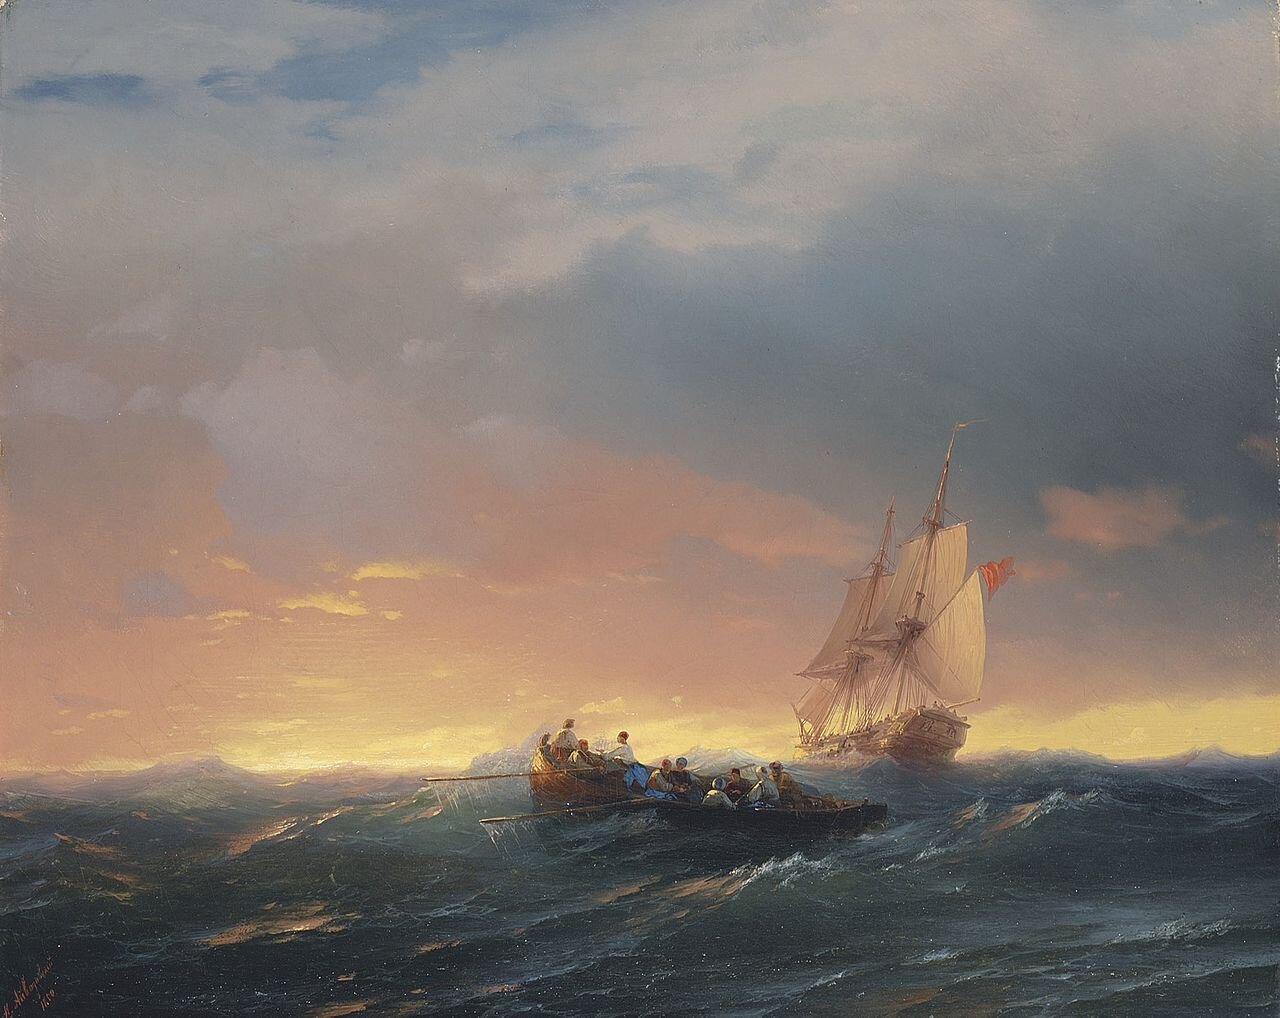 Statki na fali o zachodzie słońca Marina (pejzaż marynistyczny) Źródło: Iwan K. Ajwazowski, Statki na fali o zachodzie słońca, 1850, olej na płótnie, domena publiczna.